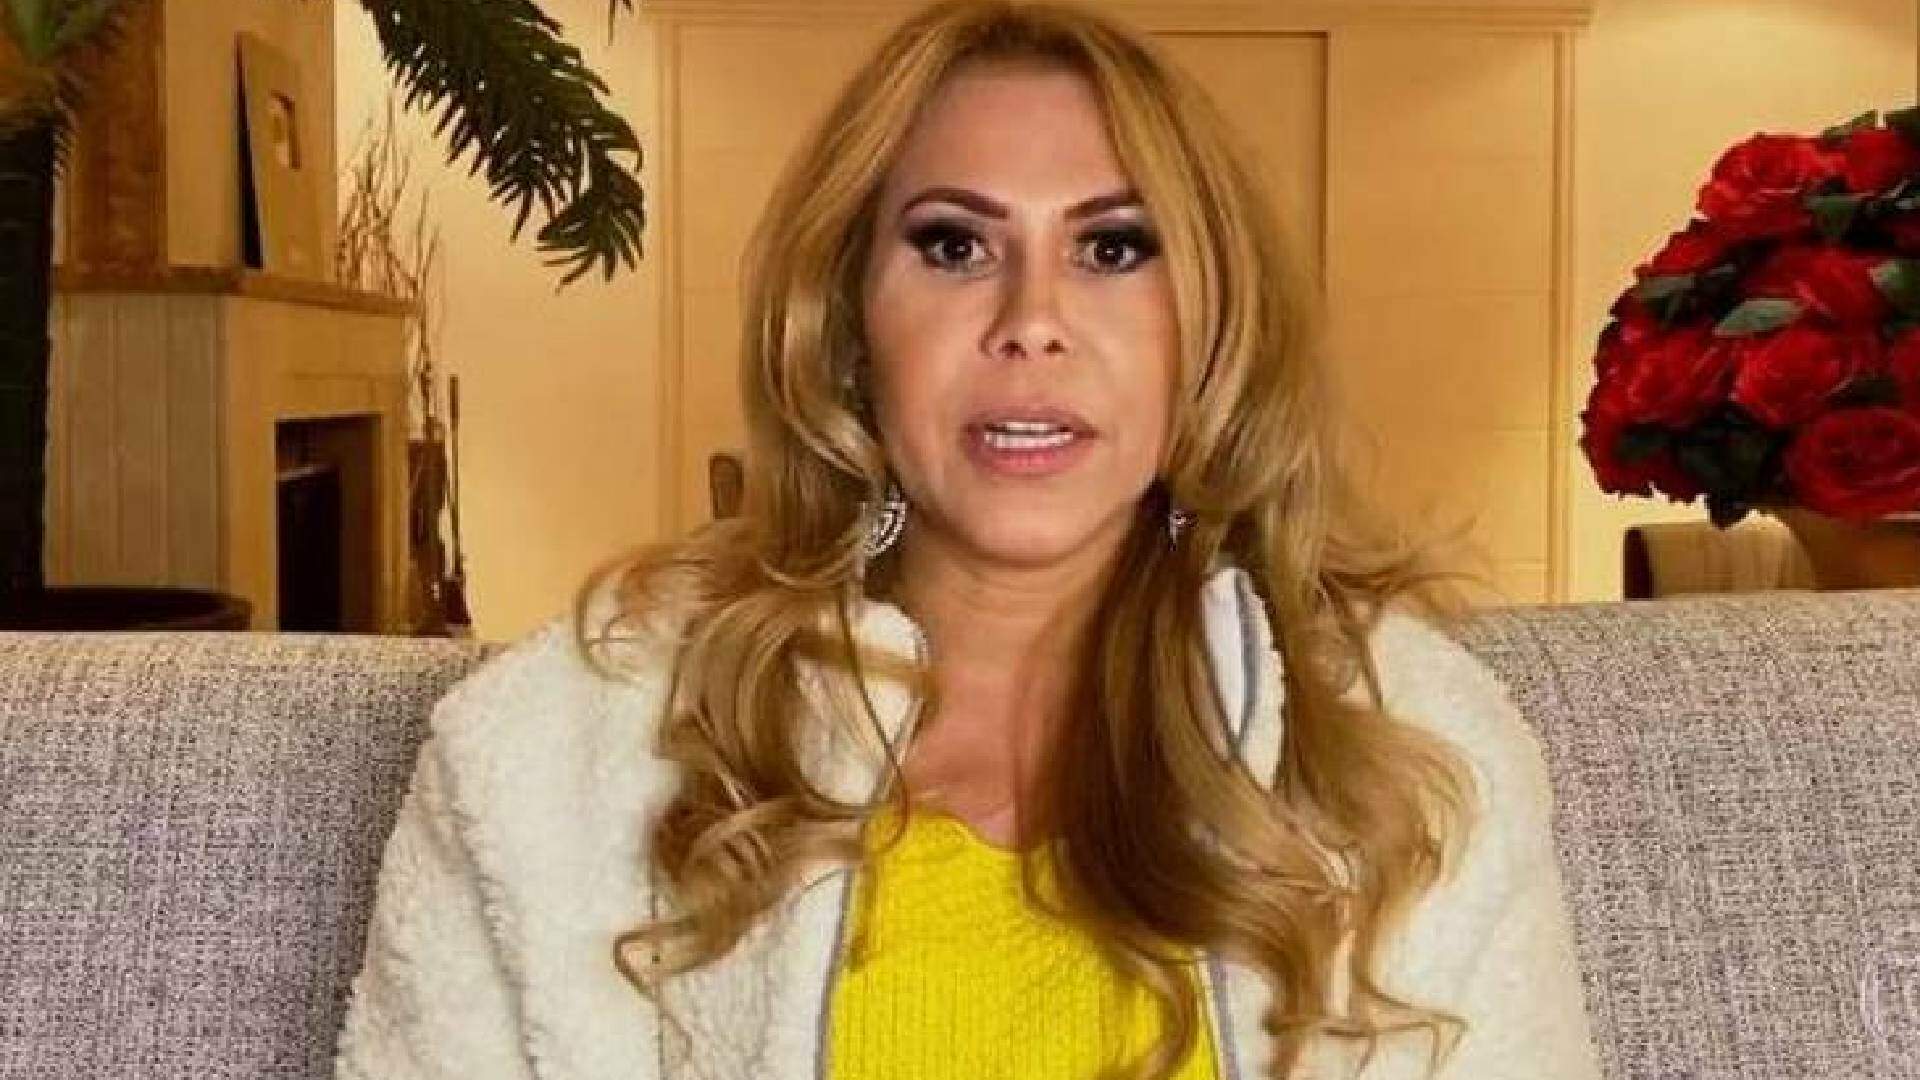 Joelma surpreende e posta fotos após aparecer em vídeo com rosto inchado: “seja forte e corajoso” - Metropolitana FM